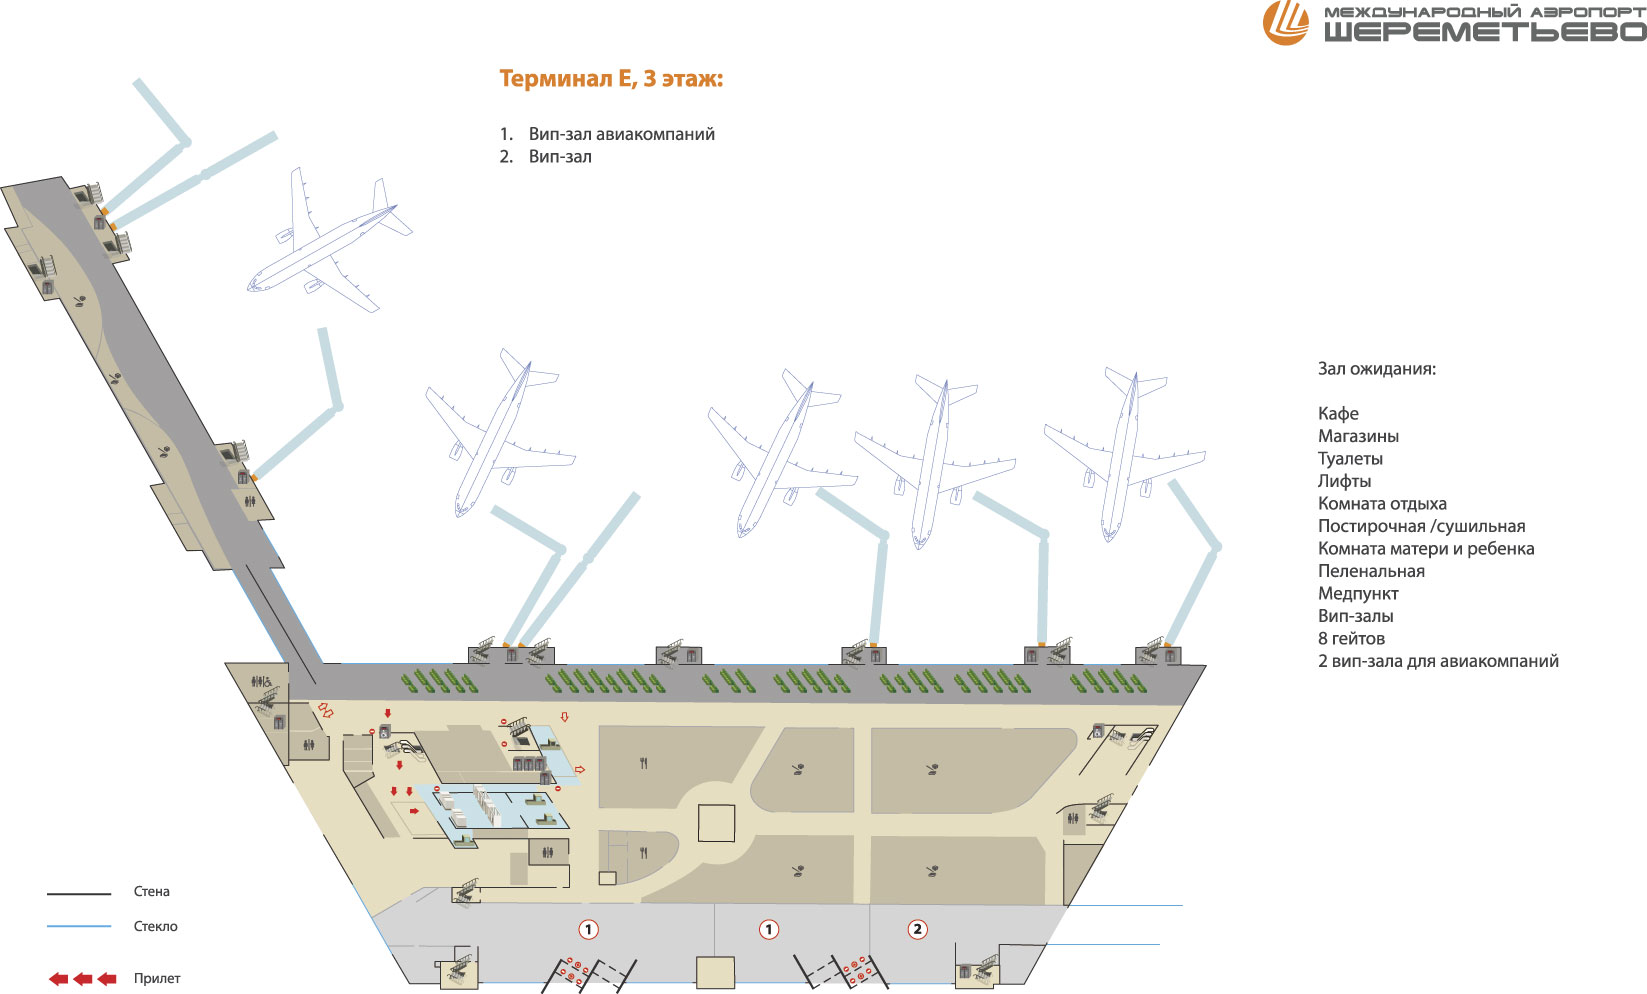 Схема терминала E аэропорта Шереметьево третий этаж